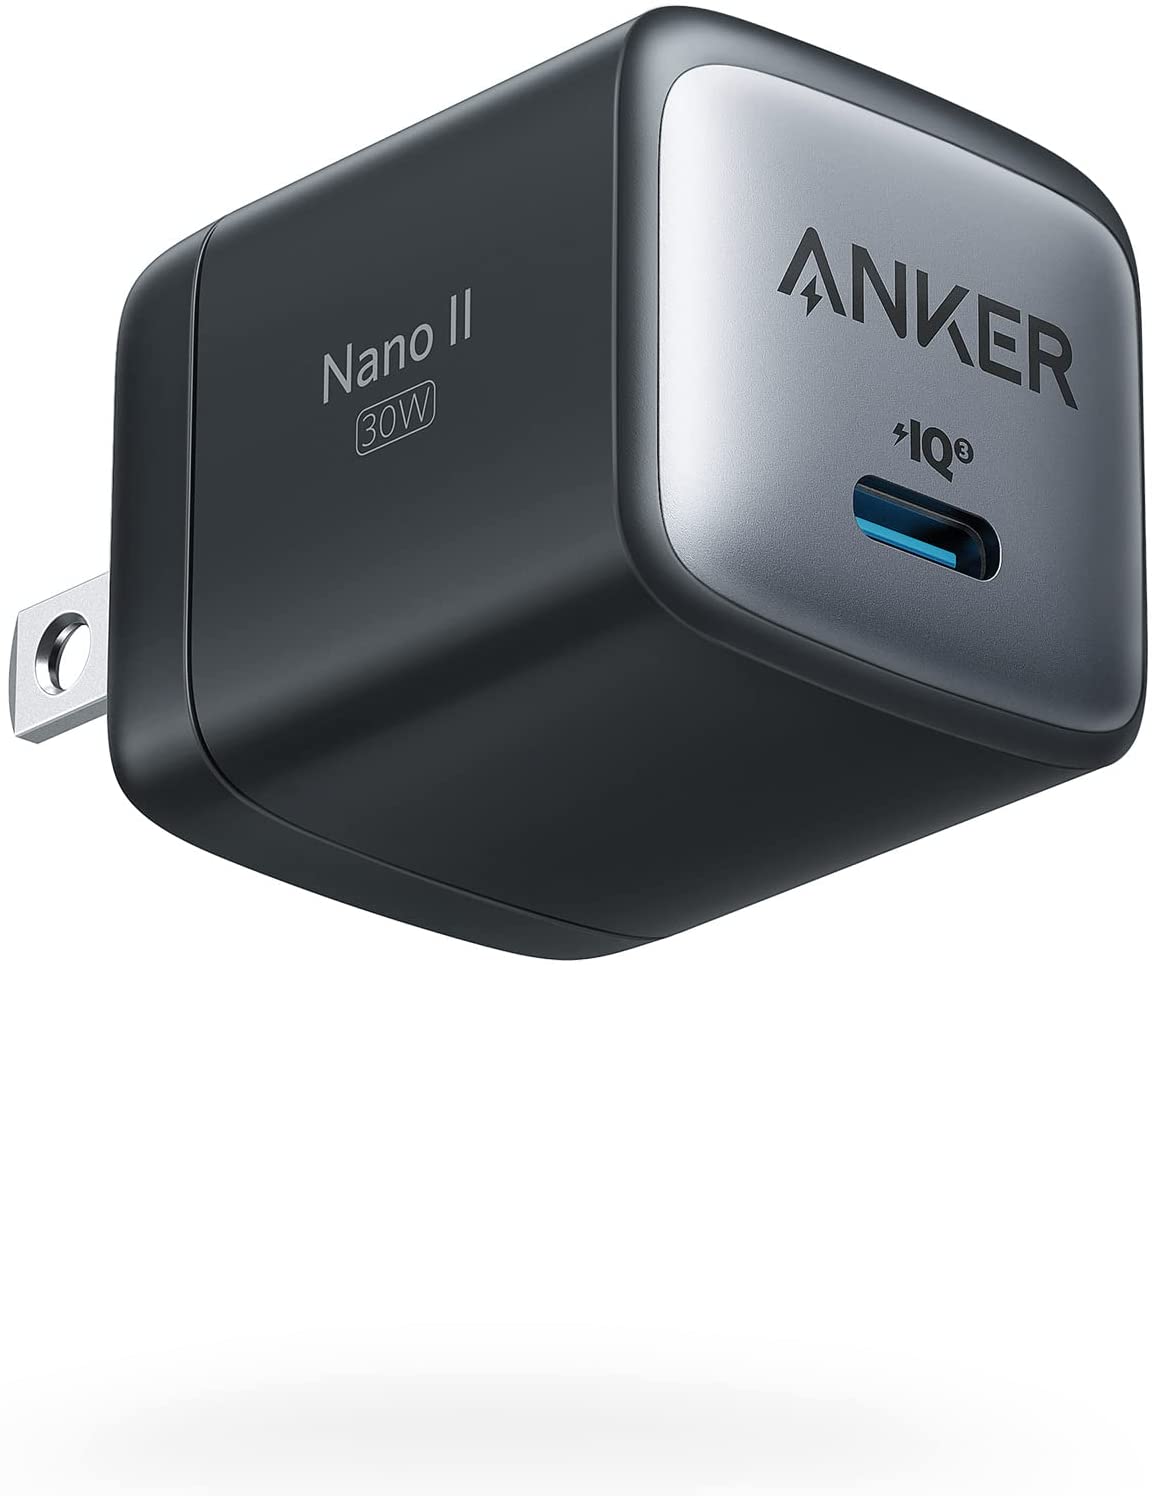 【美國代購】Anker Nano II 30W 快速充電器 GaN II 緊湊型 適用於 MacBook iPhone 12 Galaxy 手機 iPad Pro